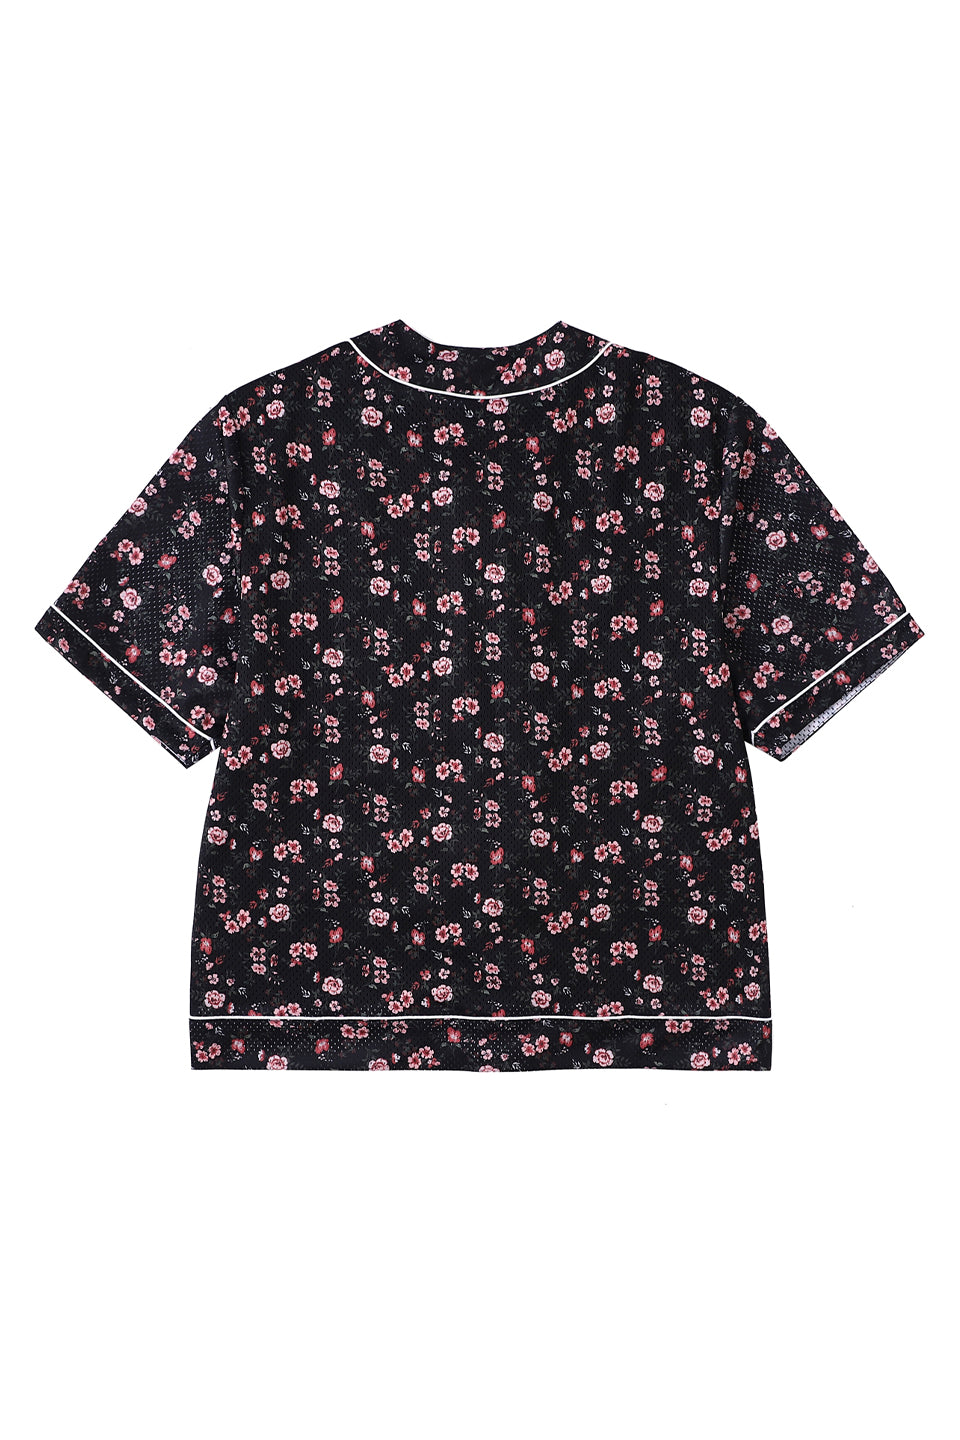 Flower Mesh Baseball Shirt